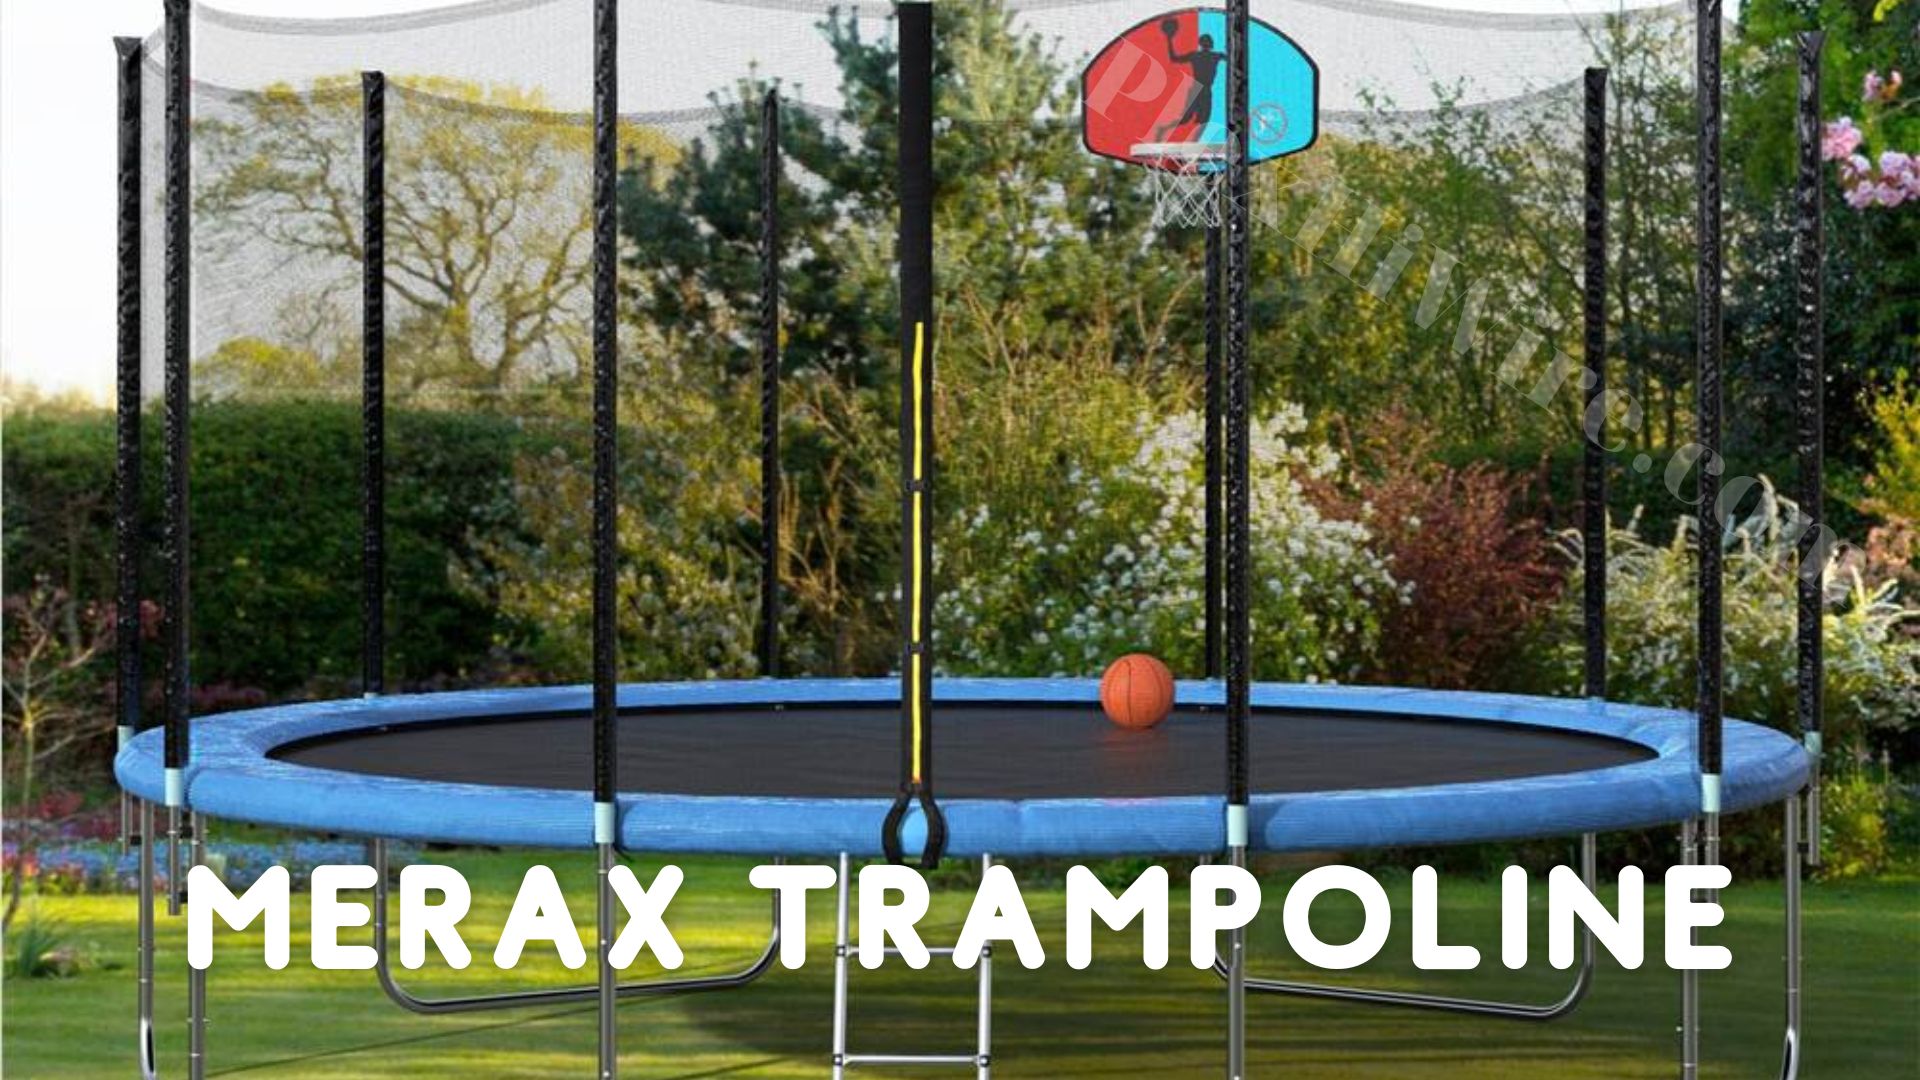 merax trampoline